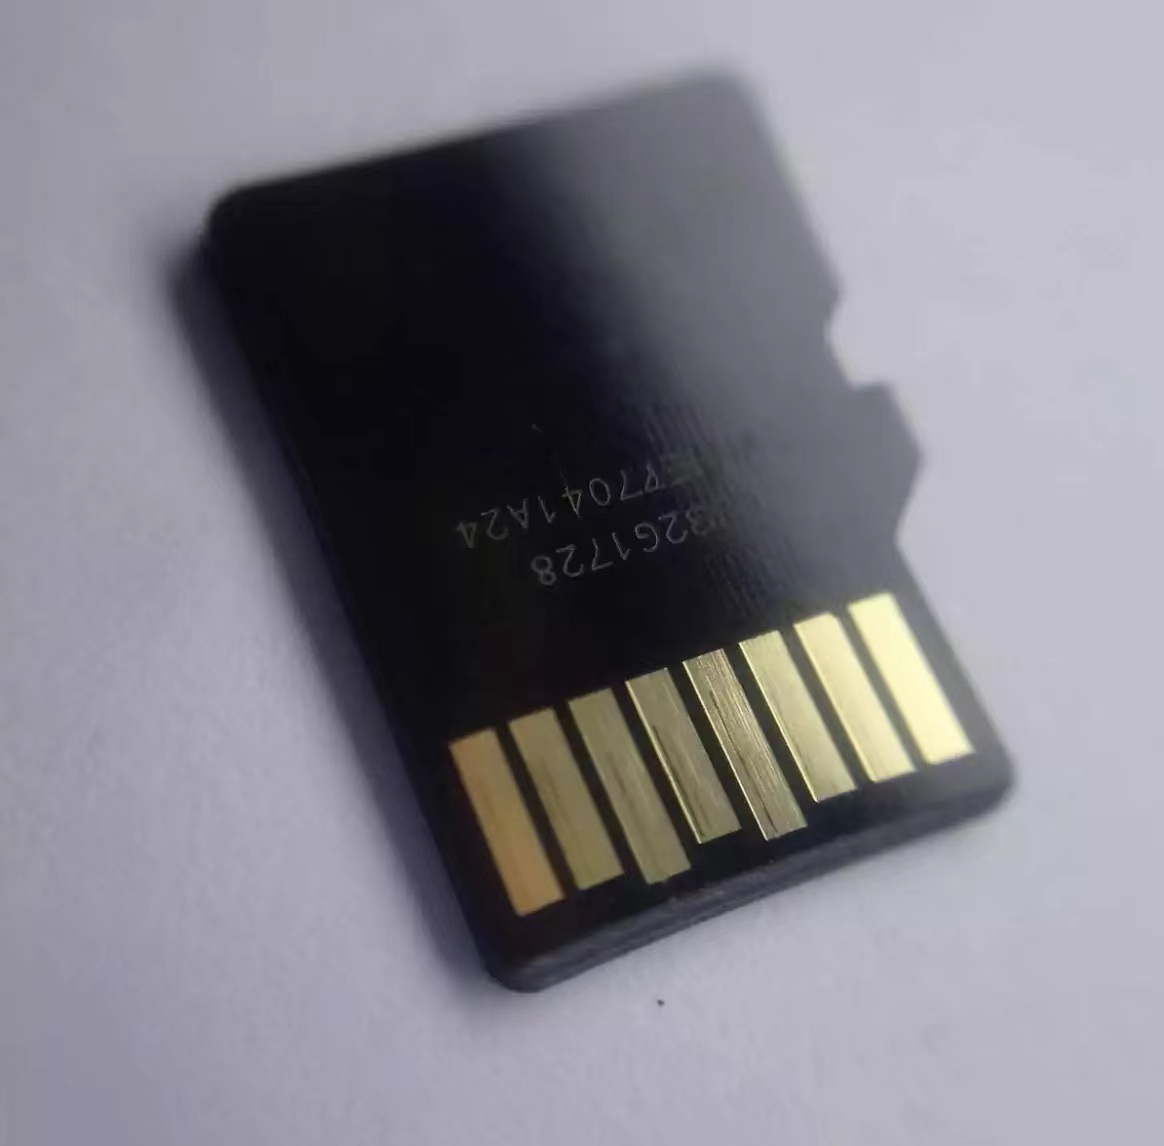 ข้อมูลเพิ่มเติมของ Kingston เมมโมรี่การ์ด 32/64/128GB SDHC/SDXC Class 10 UHS-I Micro SD Card with Adapter